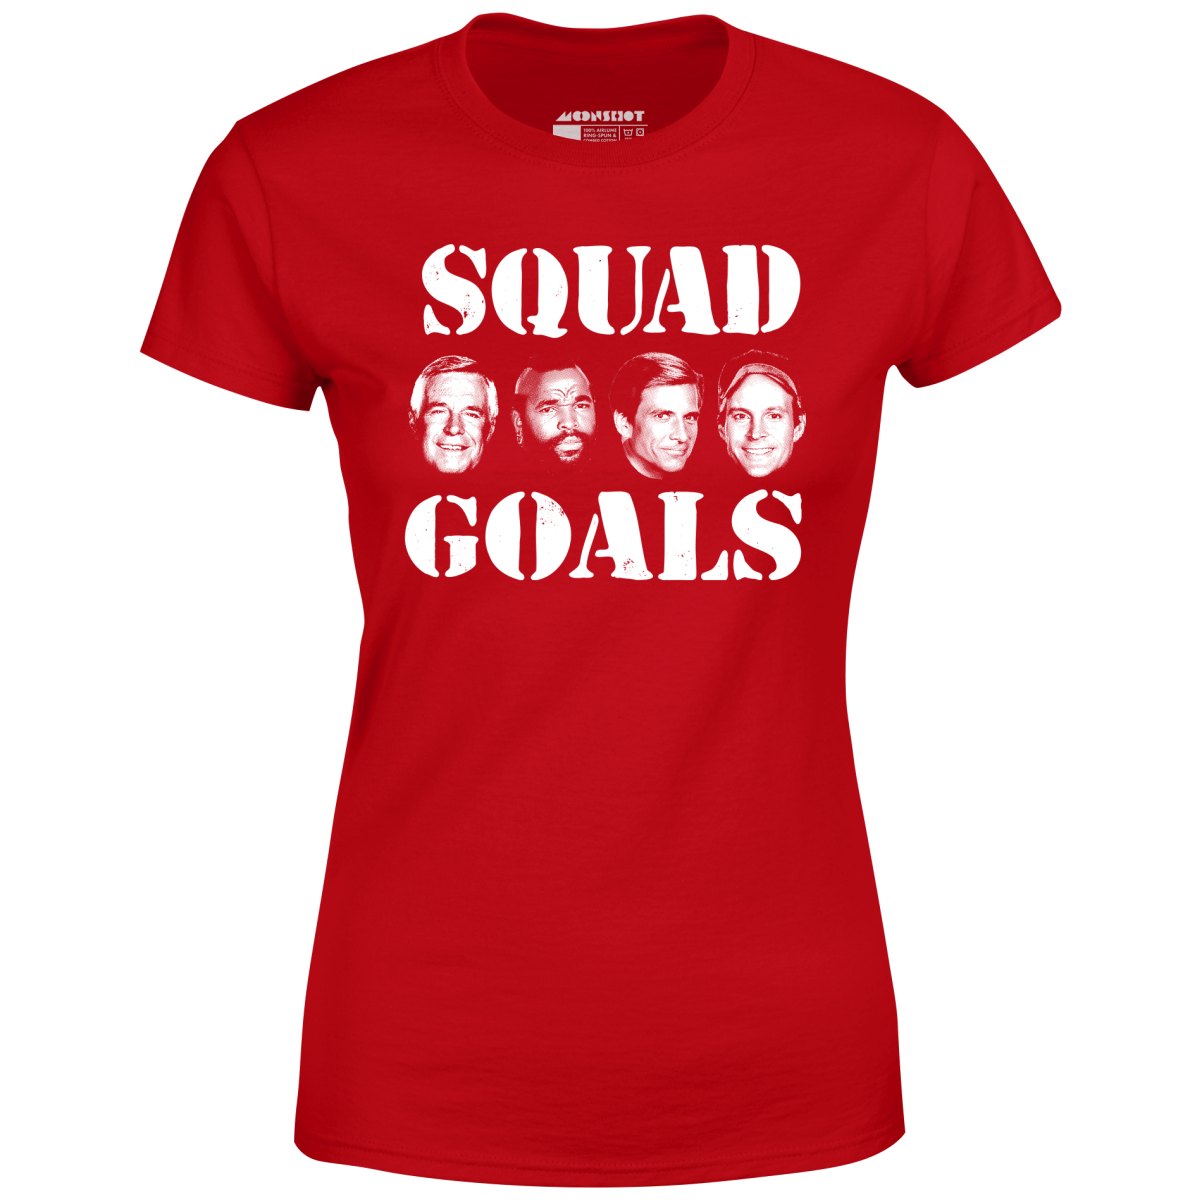 Squad Goals - A-Team - Women's T-Shirt